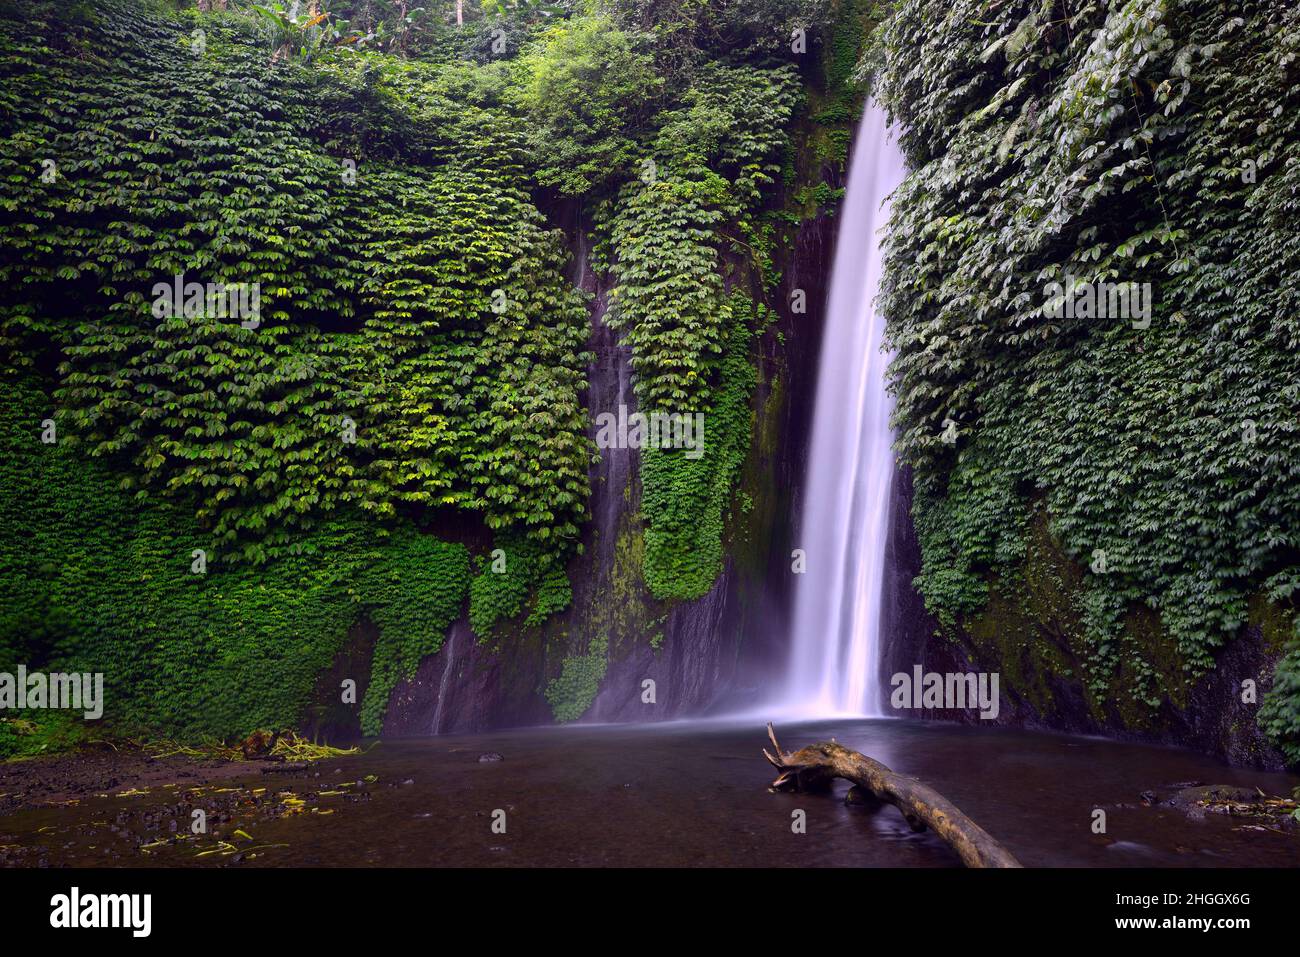 Waterfall of Munduk, Indonesia, Bali Stock Photo